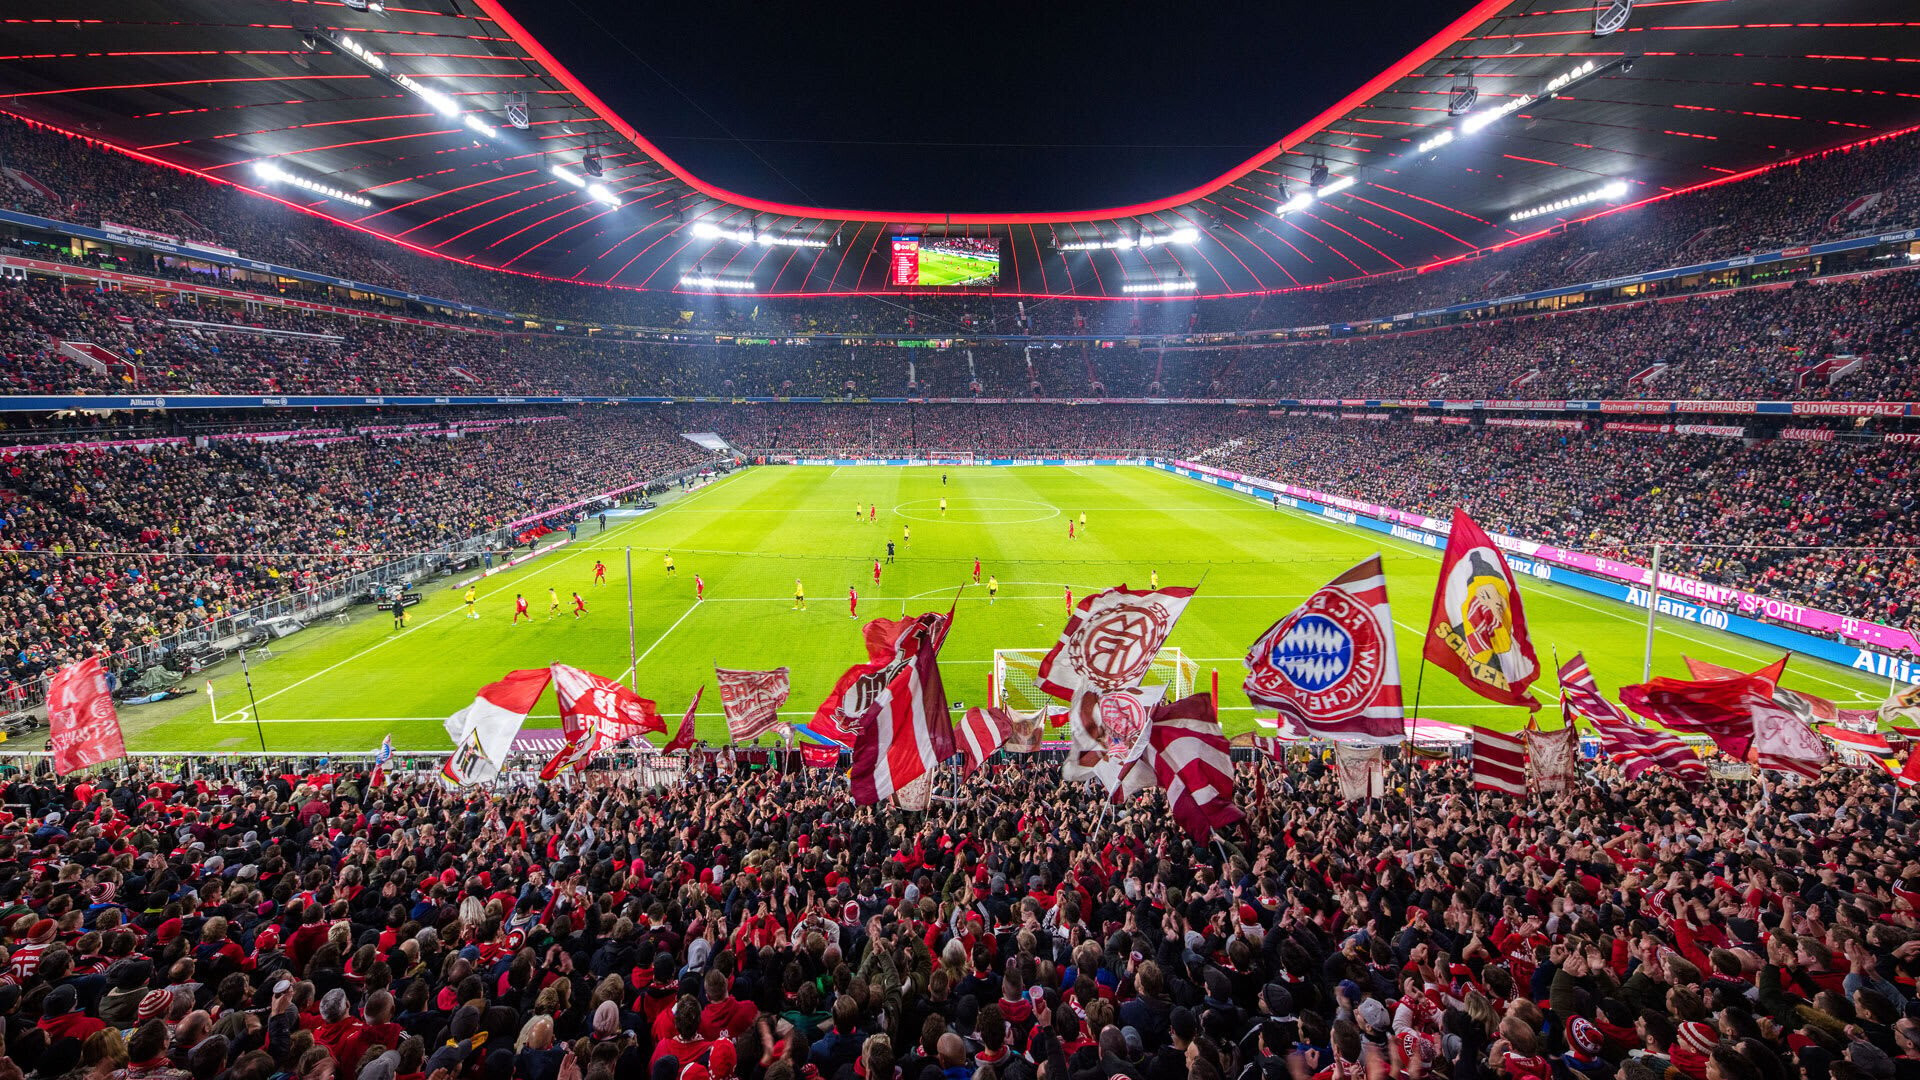 Allianz Arena là một trong những sân vận động nổi tiếng nhất của Đức. Sân khánh thành năm 2005 với sức chứa 67.000 khán giả để phục vụ World Cup 2006. Điểm nhấn nổi bật của sân là hình dạng như chiếc lốp xe, được làm từ các tấm nhựa ETFE phát sáng, có thể thay đổi màu sắc, tạo ra hiệu ứng vào buổi tối. Sân bóng này từng tổ chức nhiều trận đấu lớn như chung kết UEFA Champions League hay các trận đấu tại World Cup.